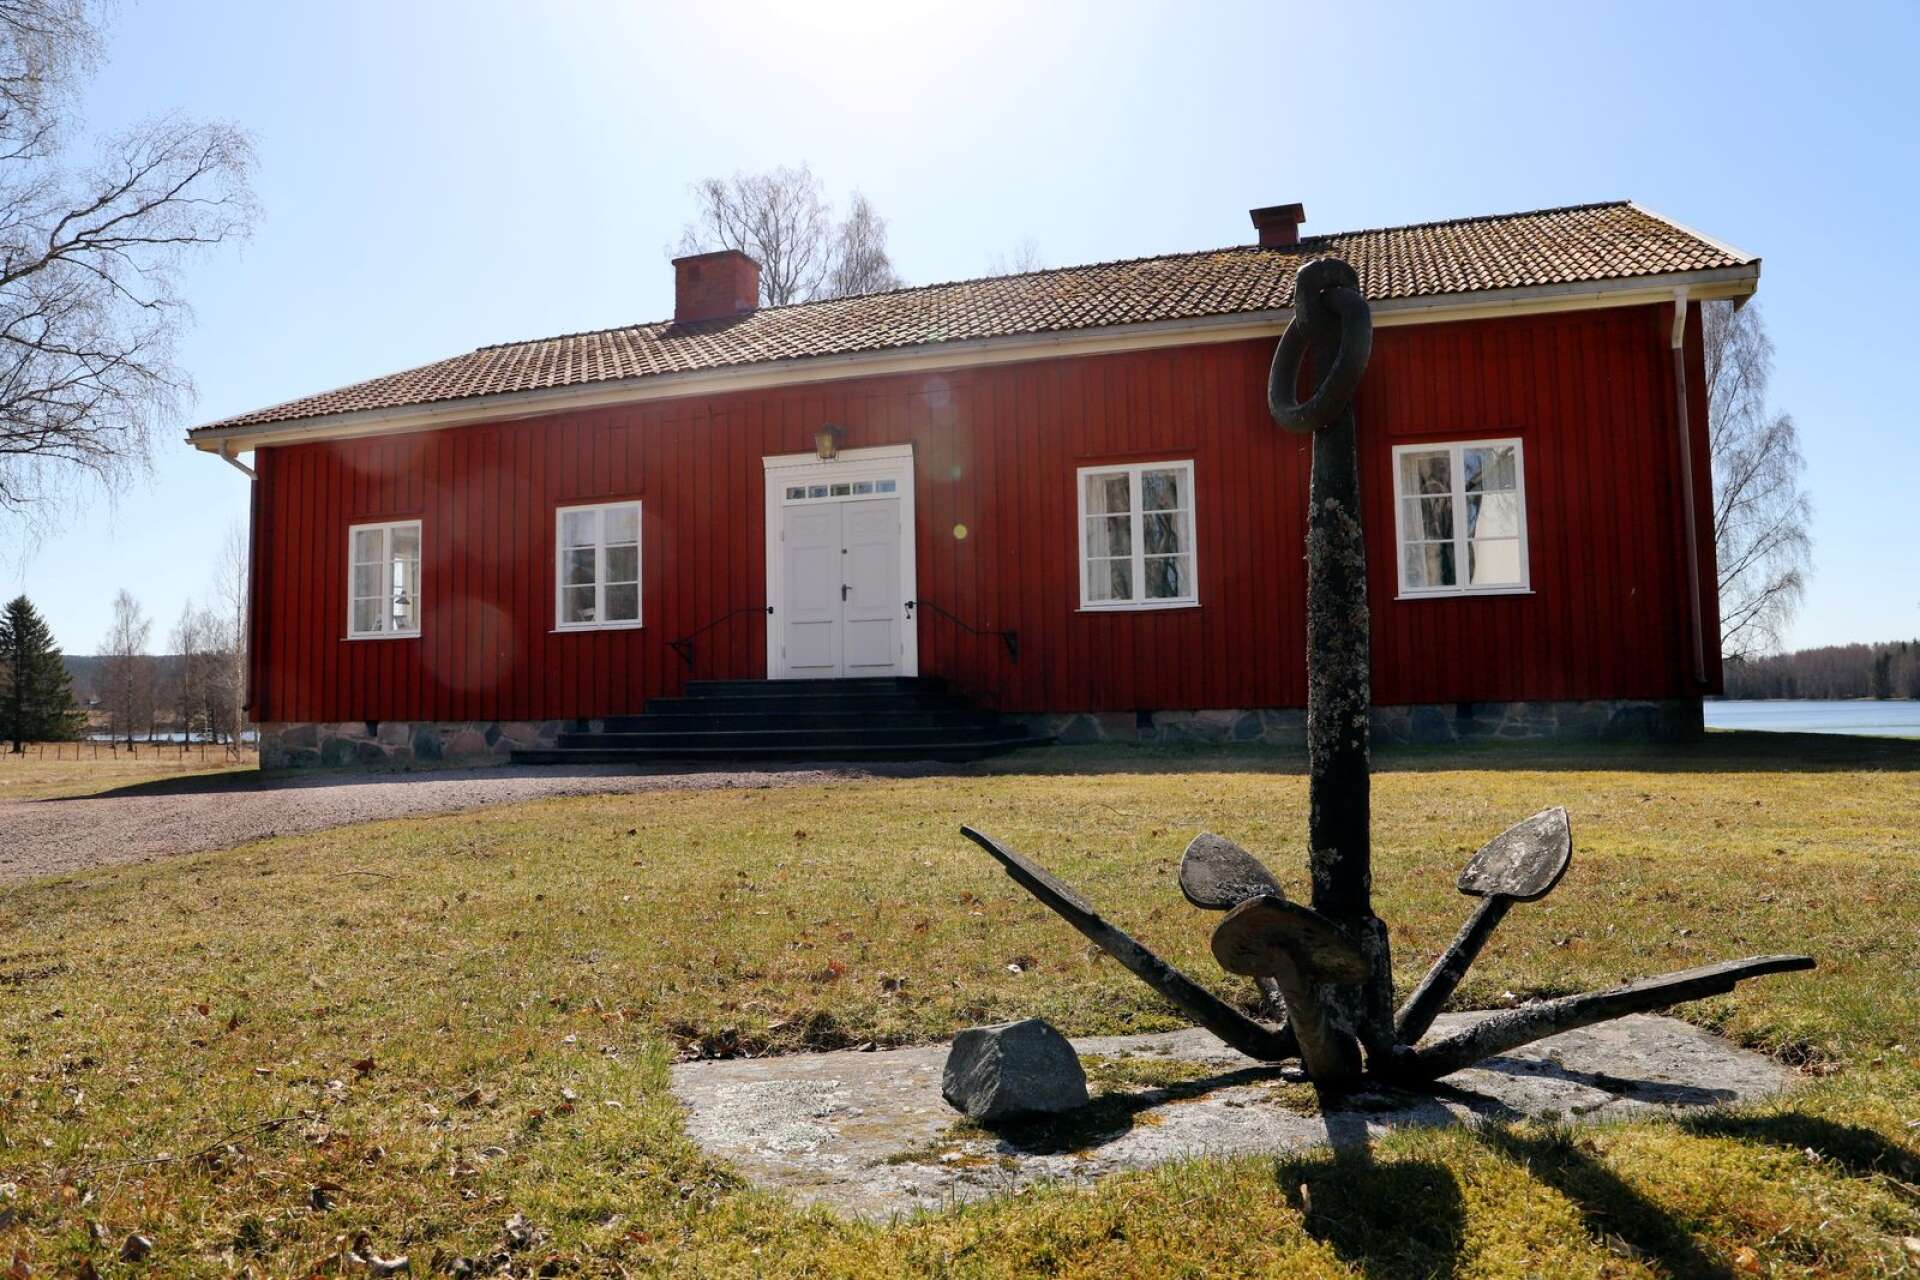 Älvsbackas ”utlåningsstation” är ursprungligen ett sockenbibliotek som öppnades 1843, efter beslut taget på sockenstämman. Sedan dess har boende i bygden kunnat låna böcker här.